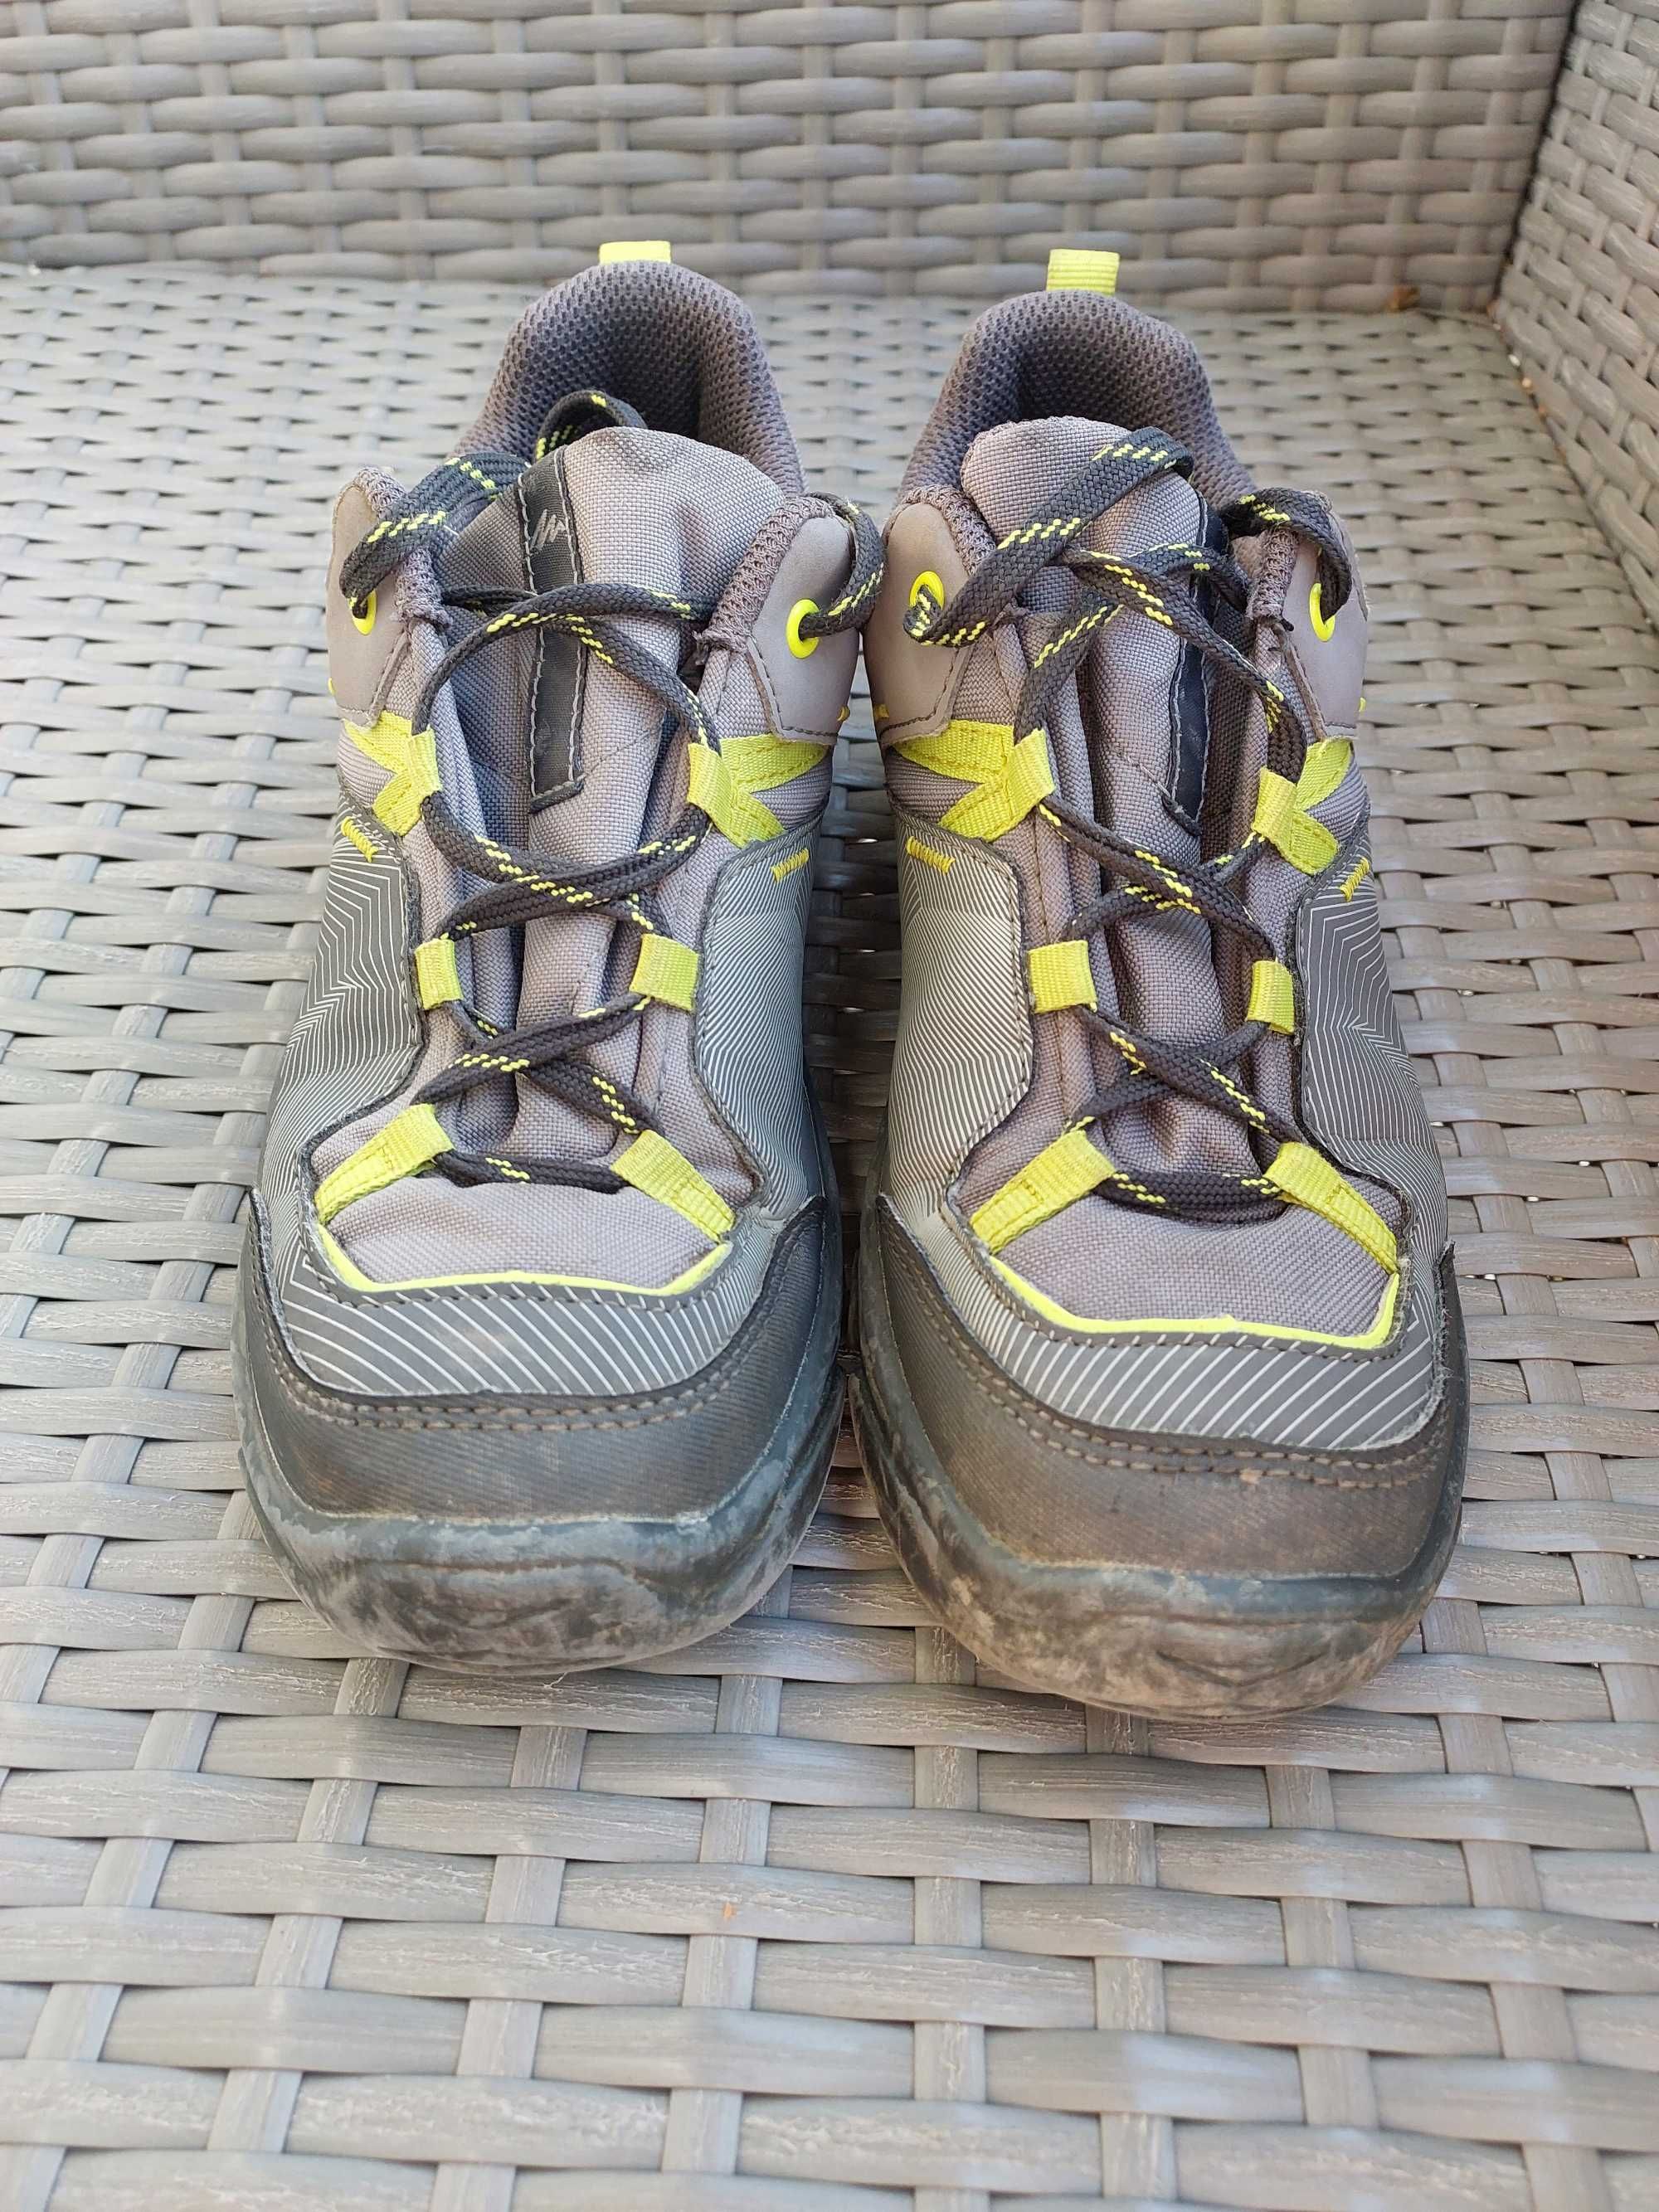 Buty jesienne chłopięce Decathlon Quechua rozmiar 37, wkladka 23 cm.